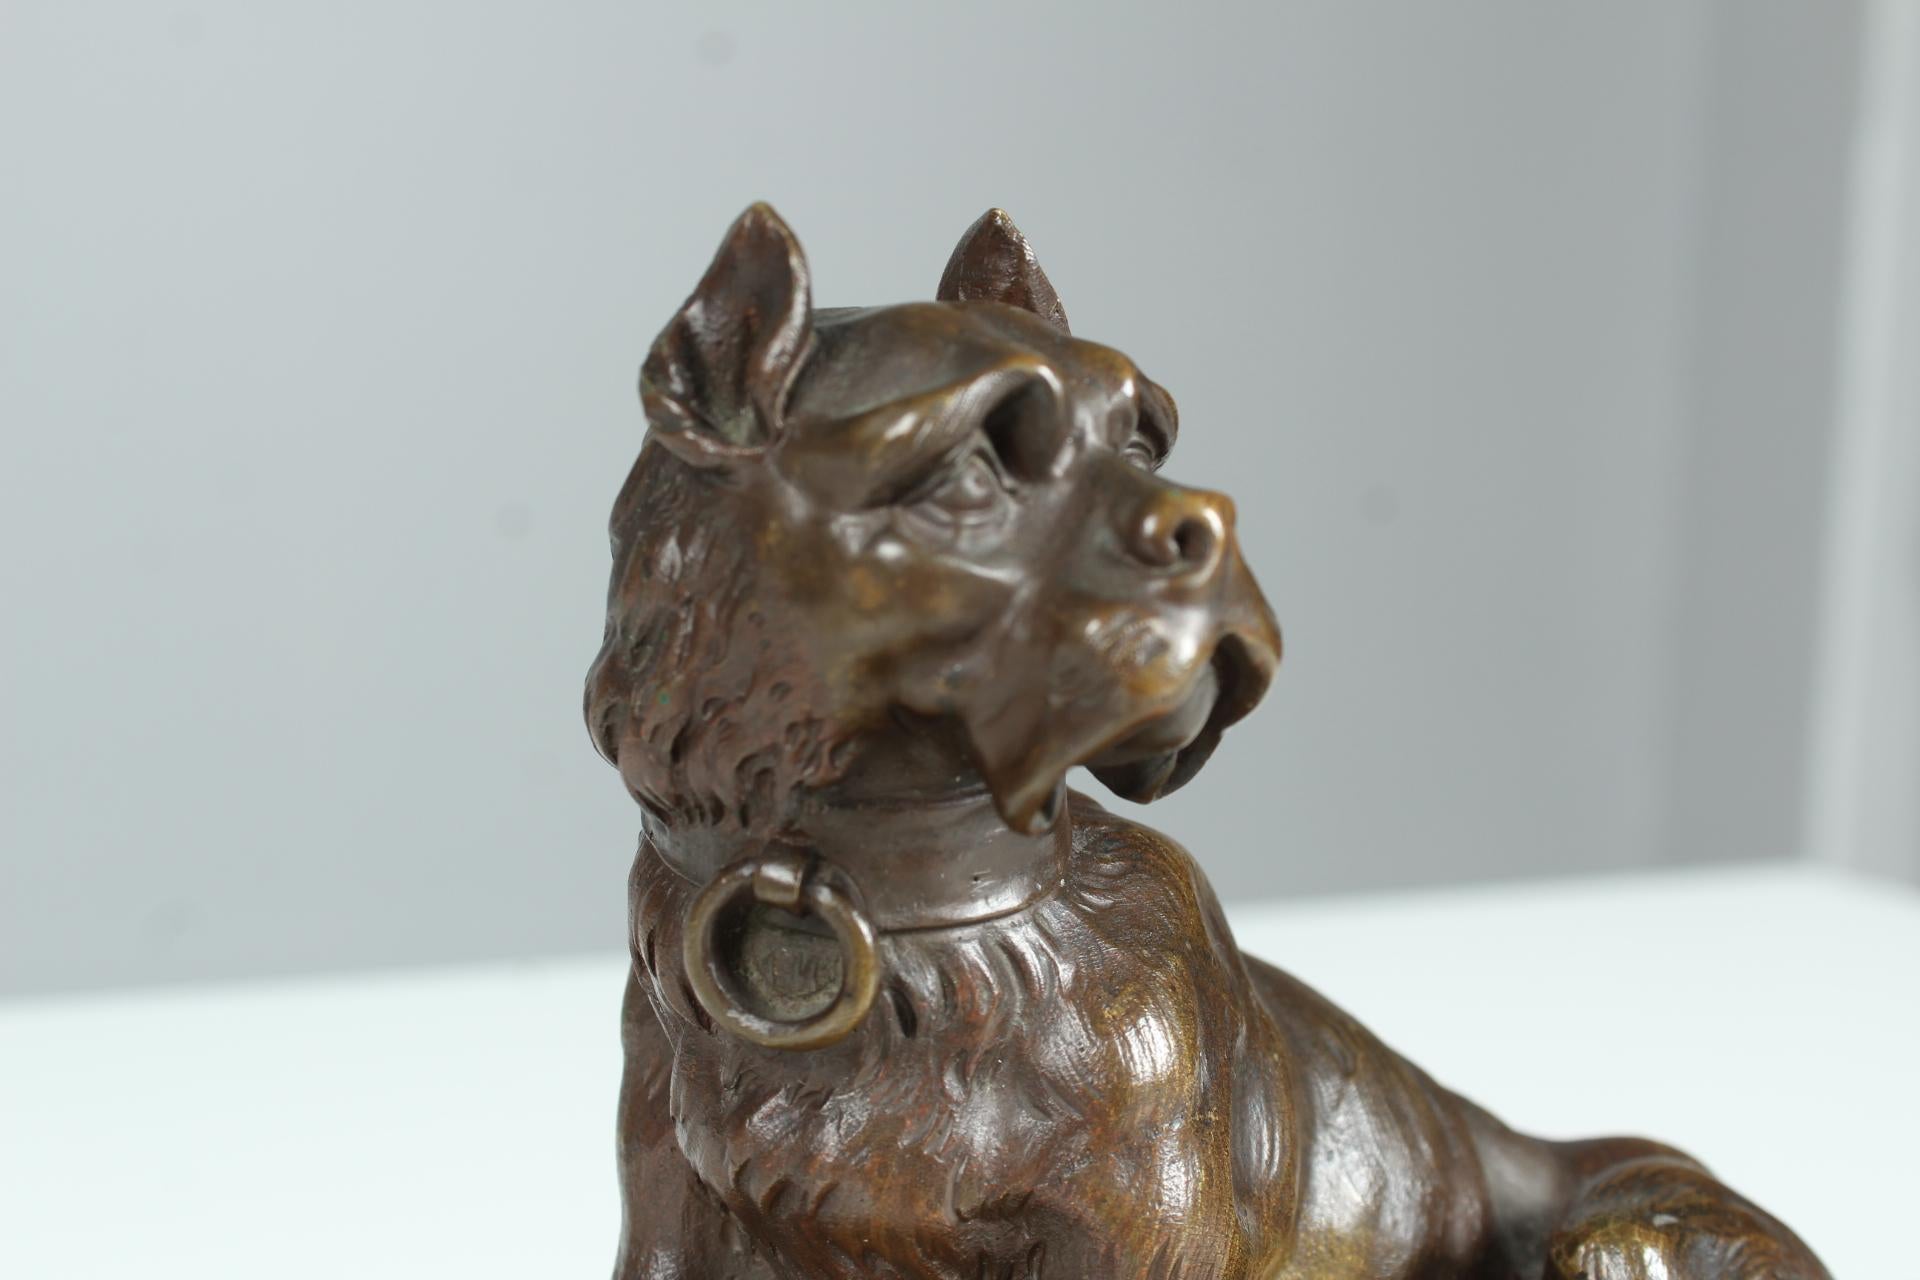 Antike Bronzeskulptur, die eine sitzende Bulldogge abbildet.
Schön gemeißelte Bronzearbeit auf einem Marmorsockel.

